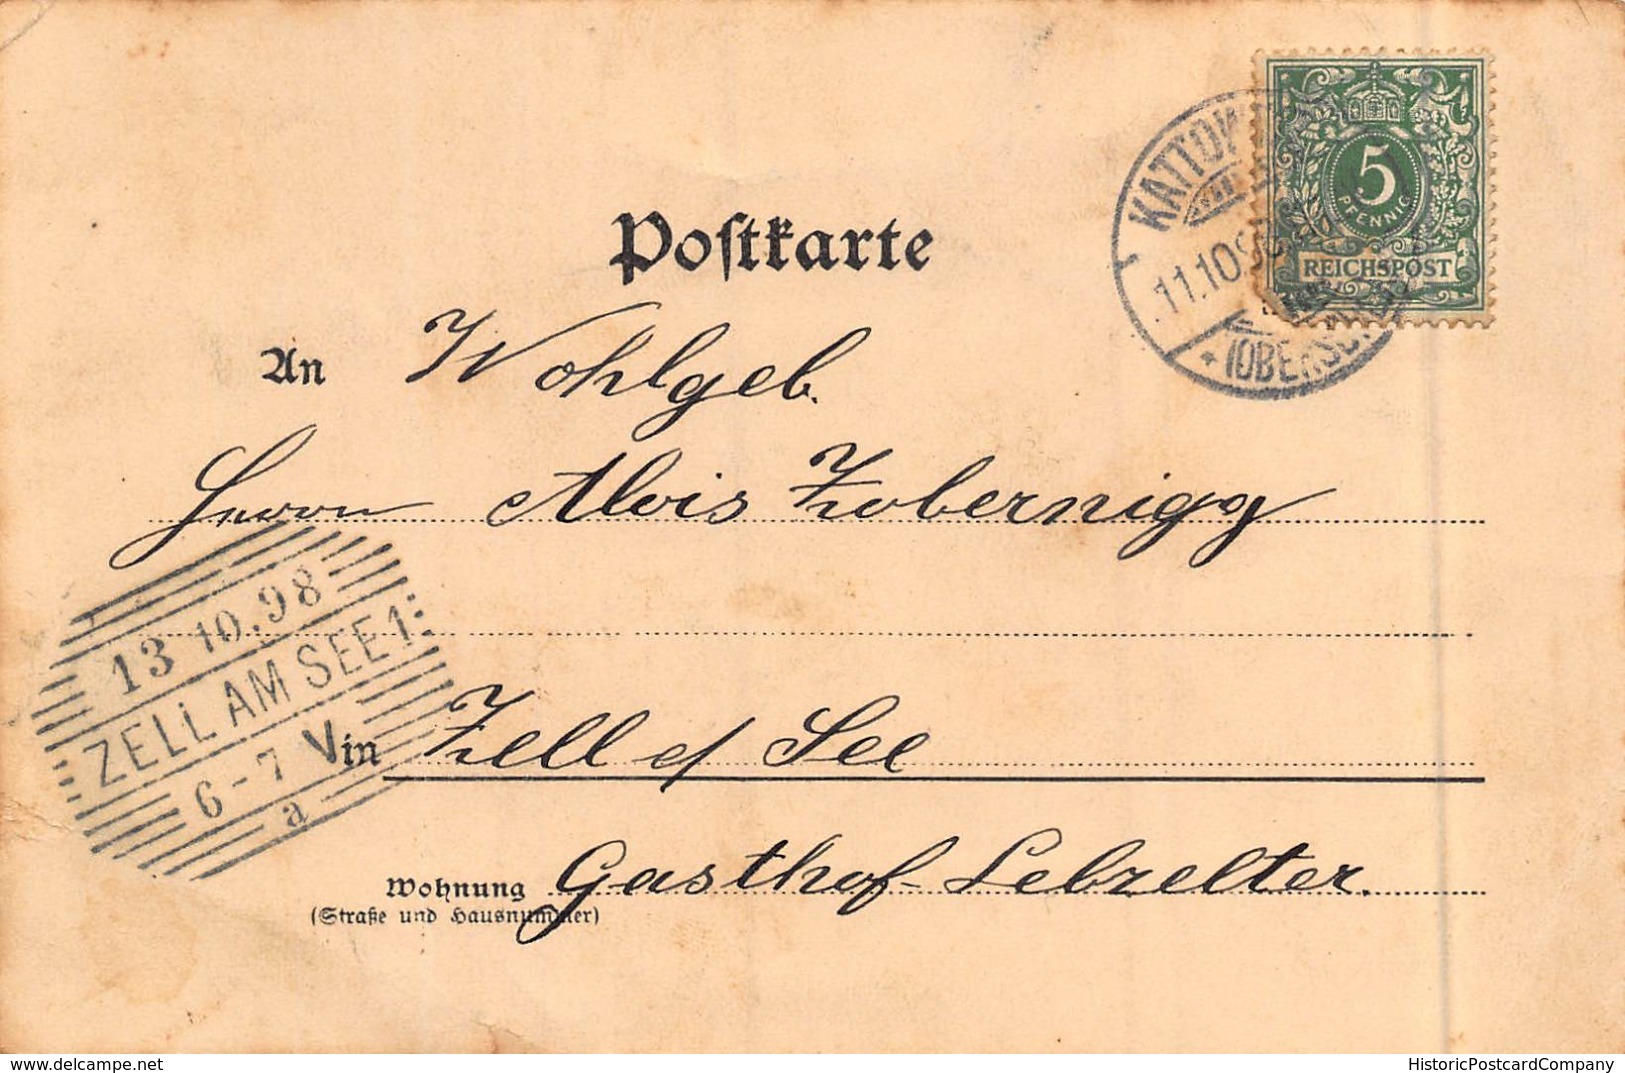 GRUSS Aus KATTOWITZ POLAND ~ HOLTZESTRASSE-BADEHAUS-MADCHENSCHULE~1898 G SIWINNA PUBLISHED PHOTO POSTCARD - Polen